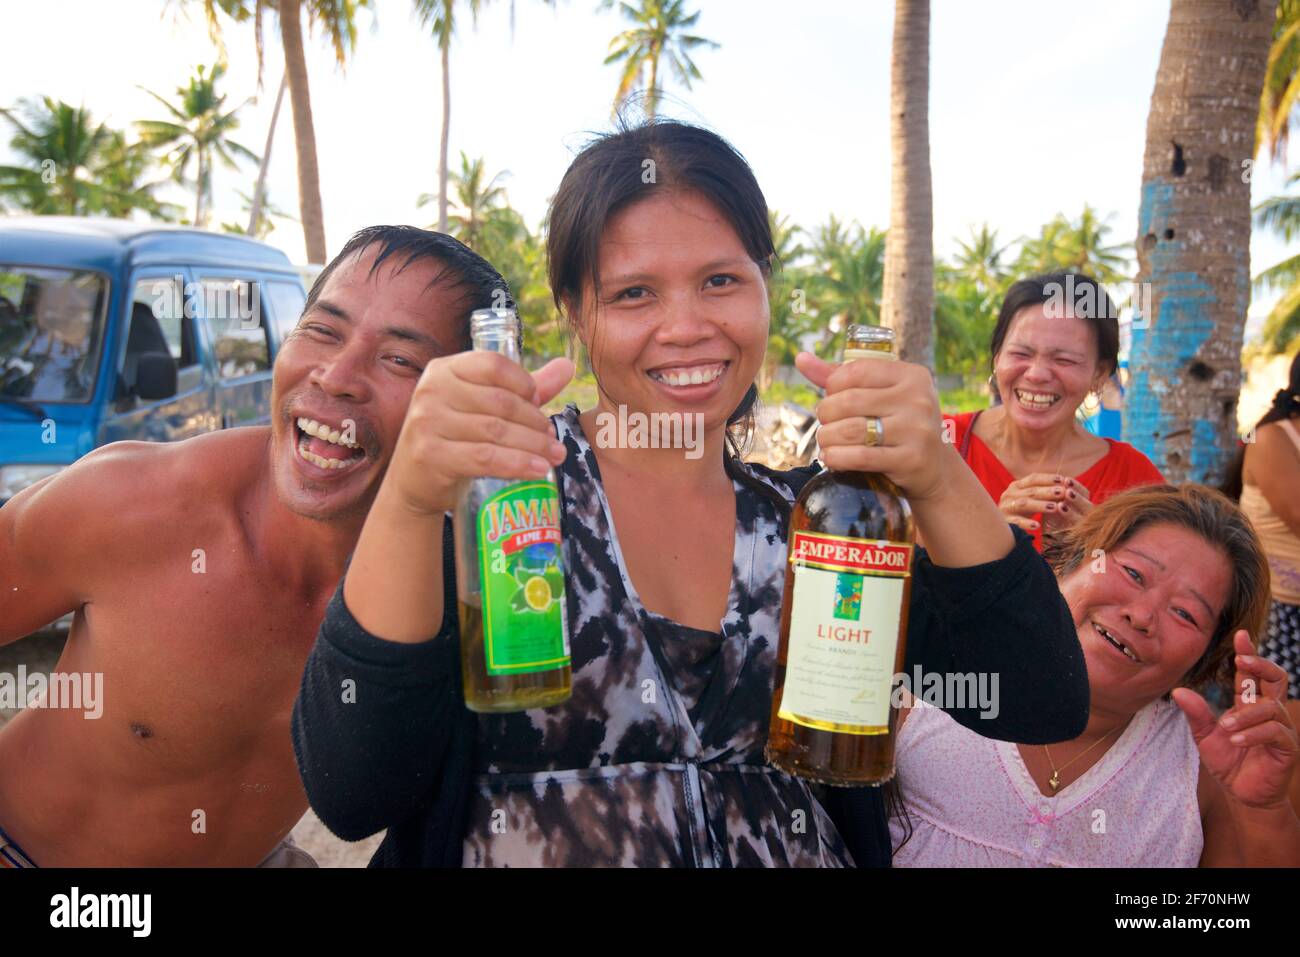 Philippinische Familie und Freunde genießen gemeinsam den Strand und ein paar Drinks. Santa Fe, Bantayan Island, Cebu, Philippinen Stockfoto